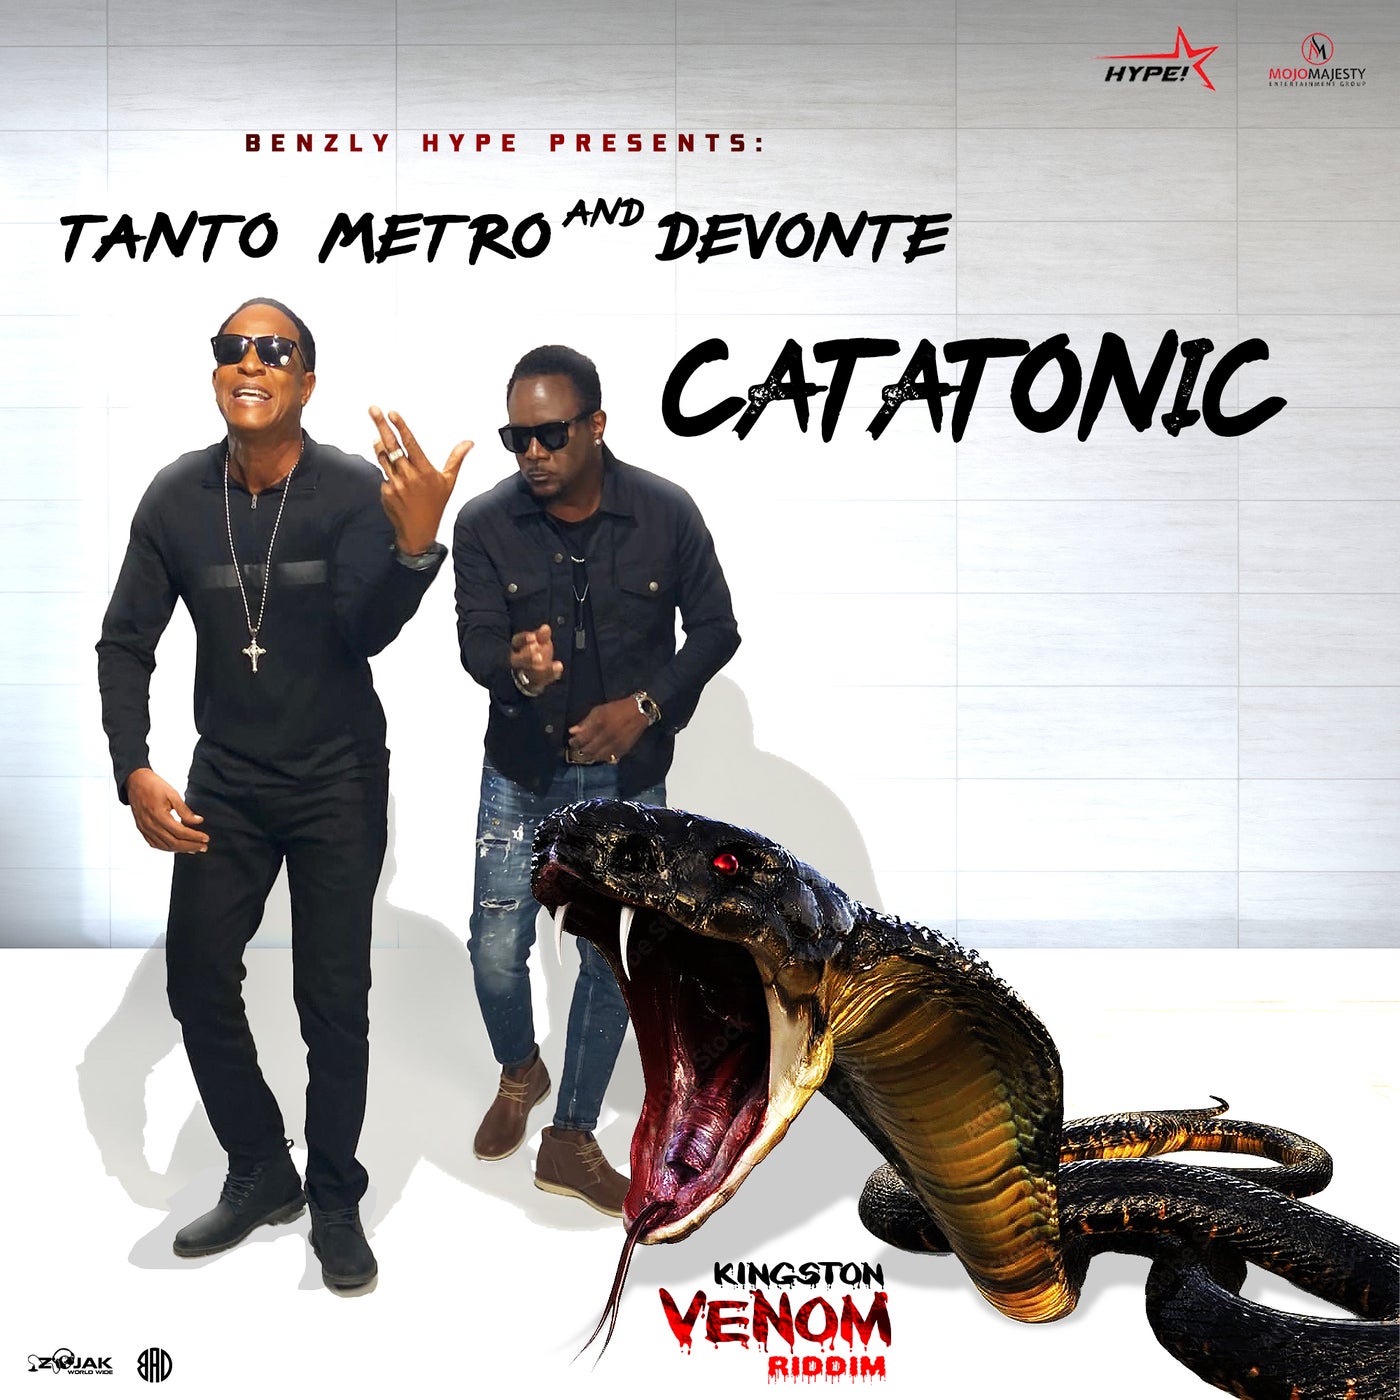 Catatonic by Tanto Metro & Devonte on Beatsource